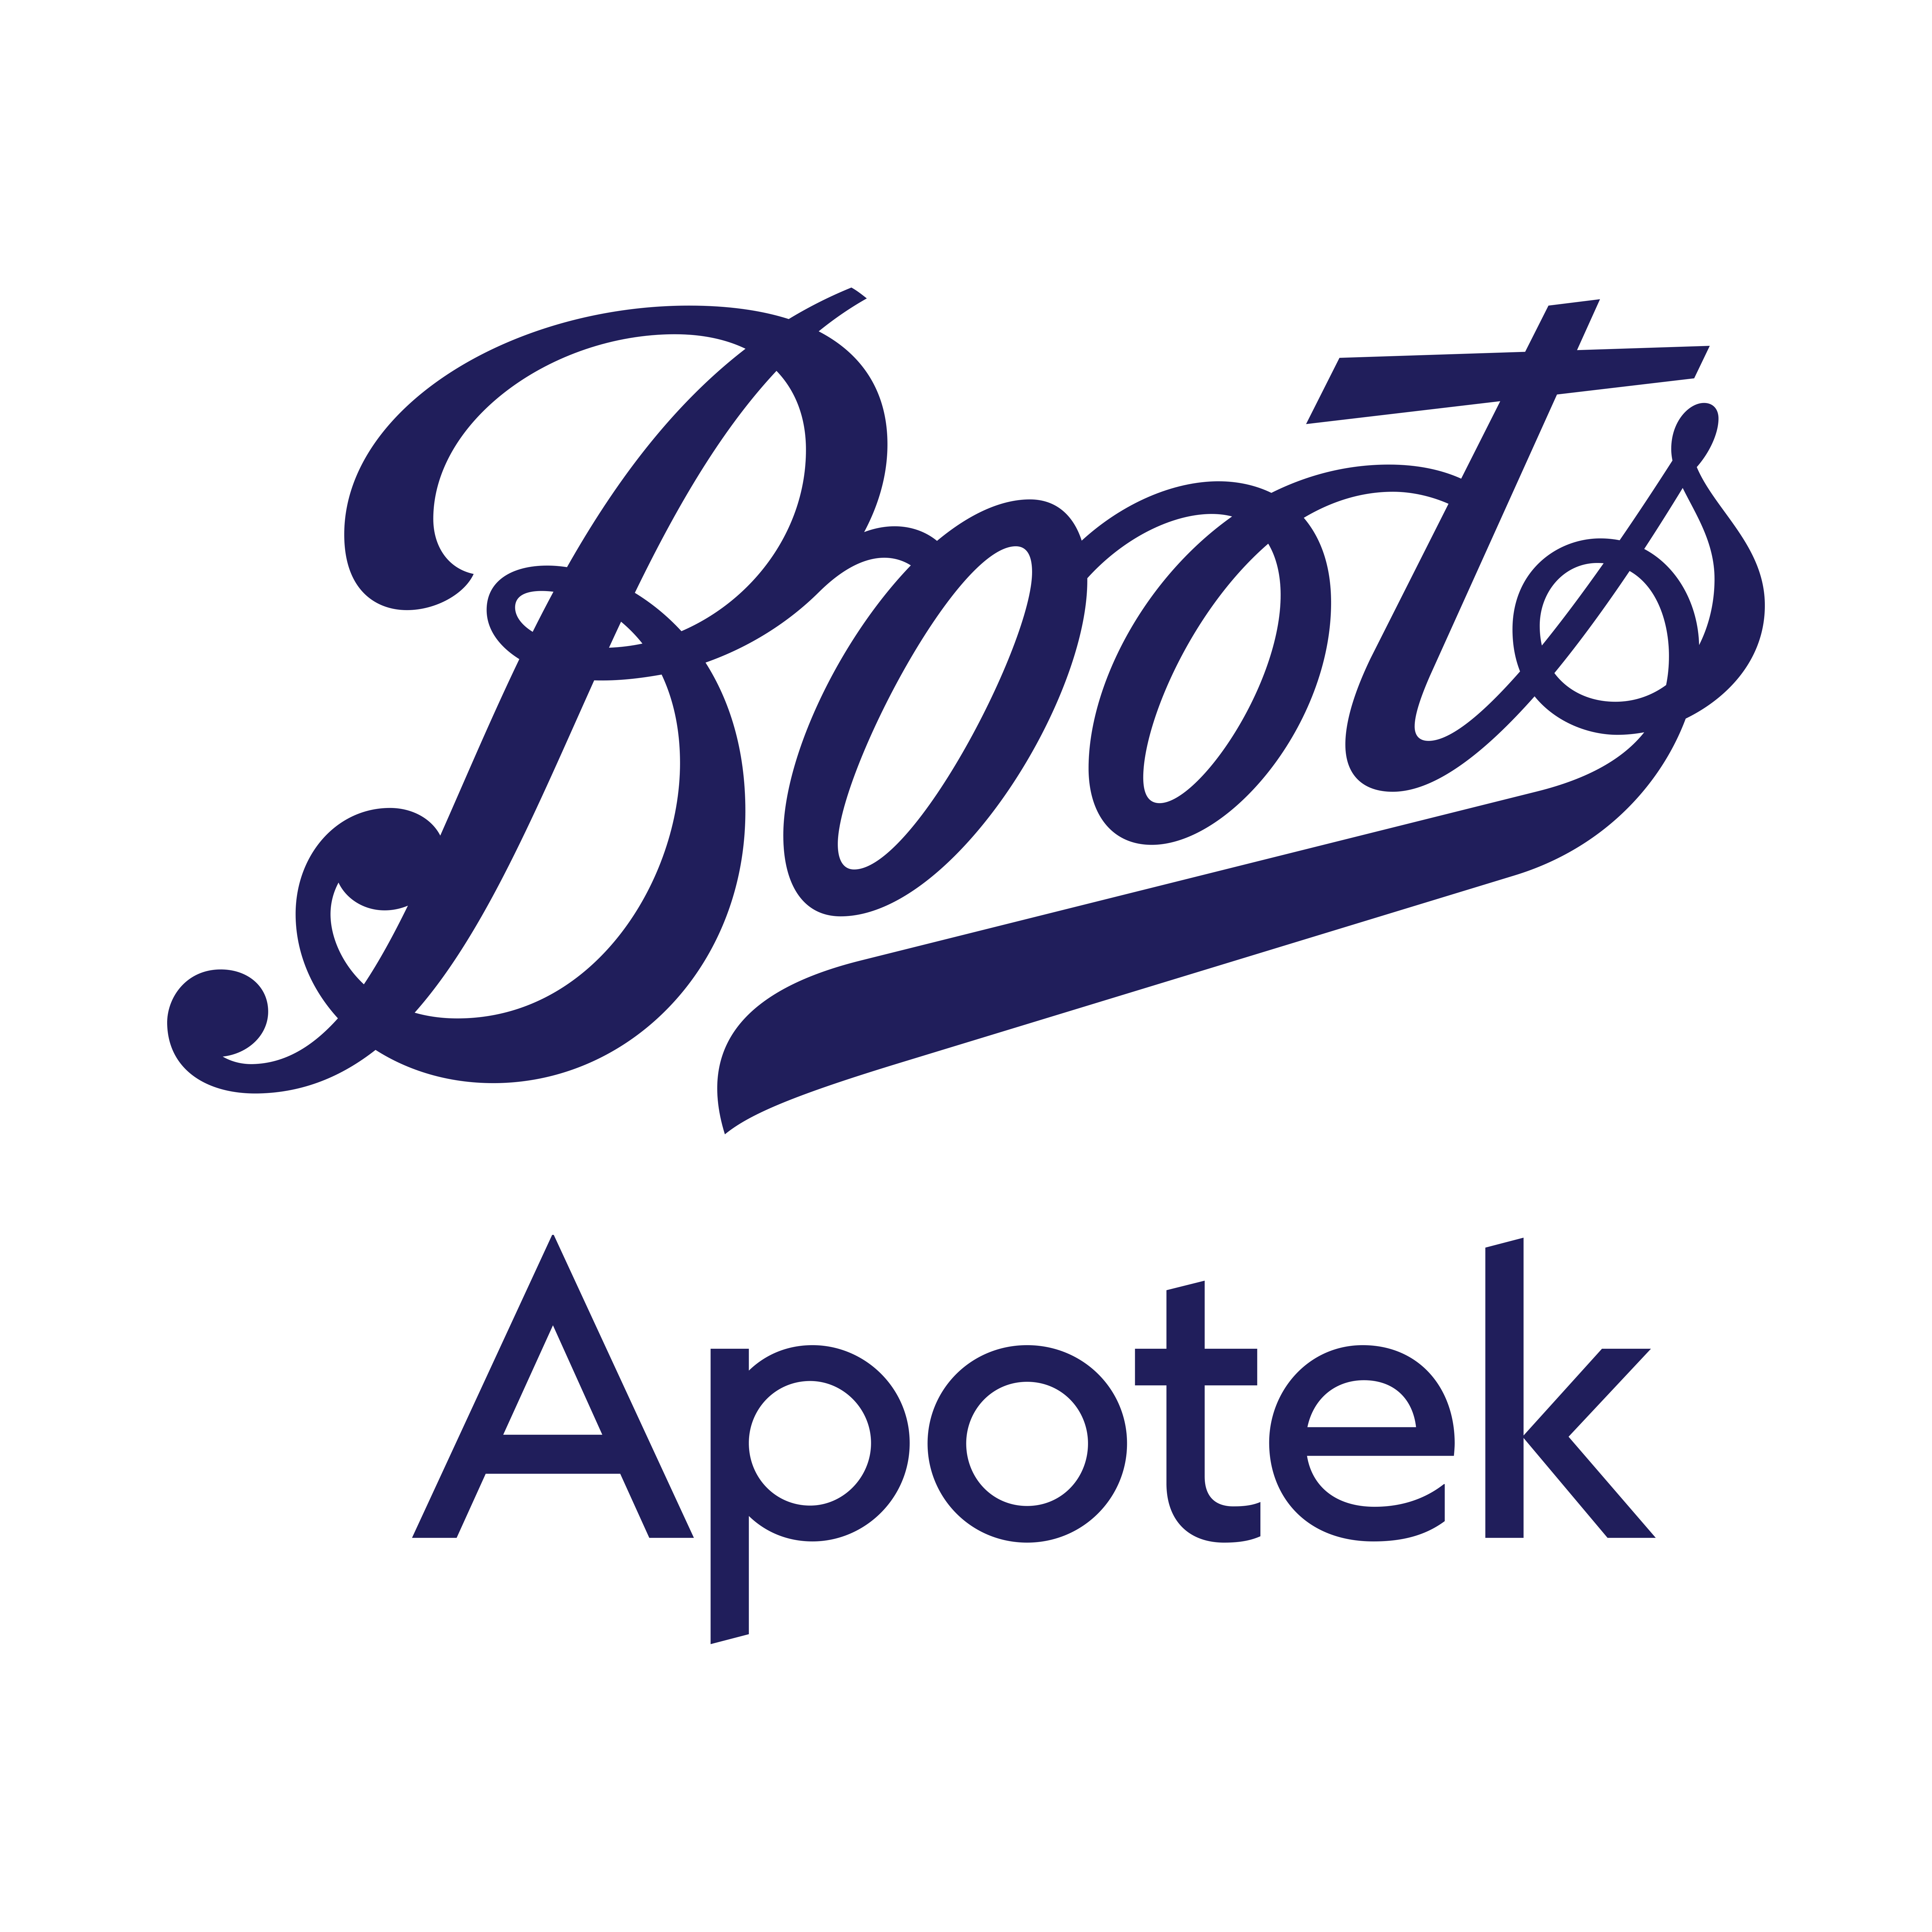 Boots Apotek